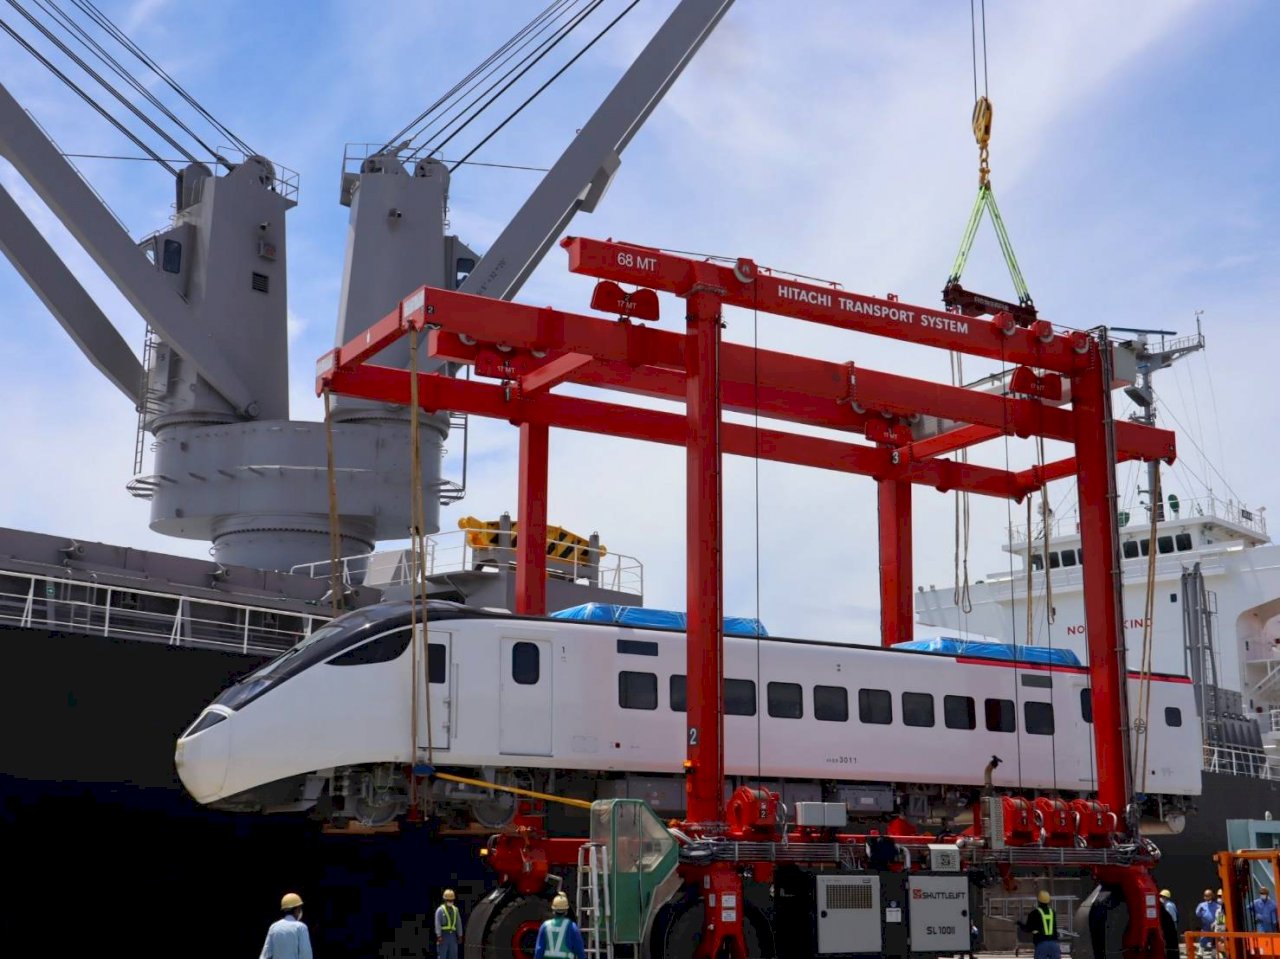 การรถไฟไต้หวันจัดซื้อรถไฟใหม่จากญี่ปุ่น คาด 30 กรกฎาคมนี้ ส่งถึงท่าเรือฮัวเหลียน